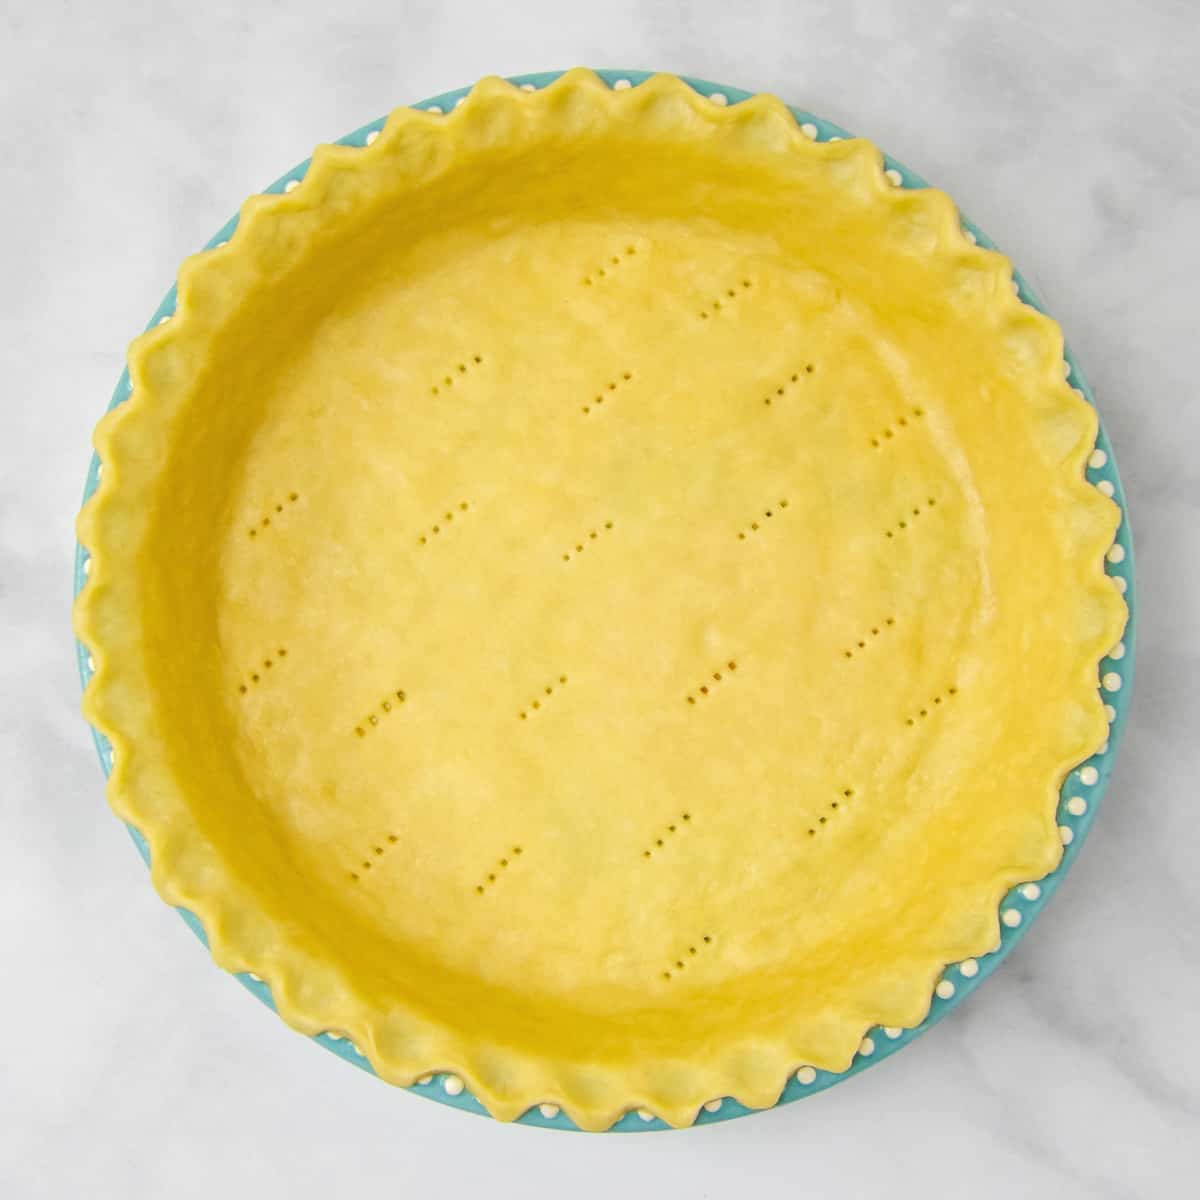 Homemade pie crust in a blue pie dish.